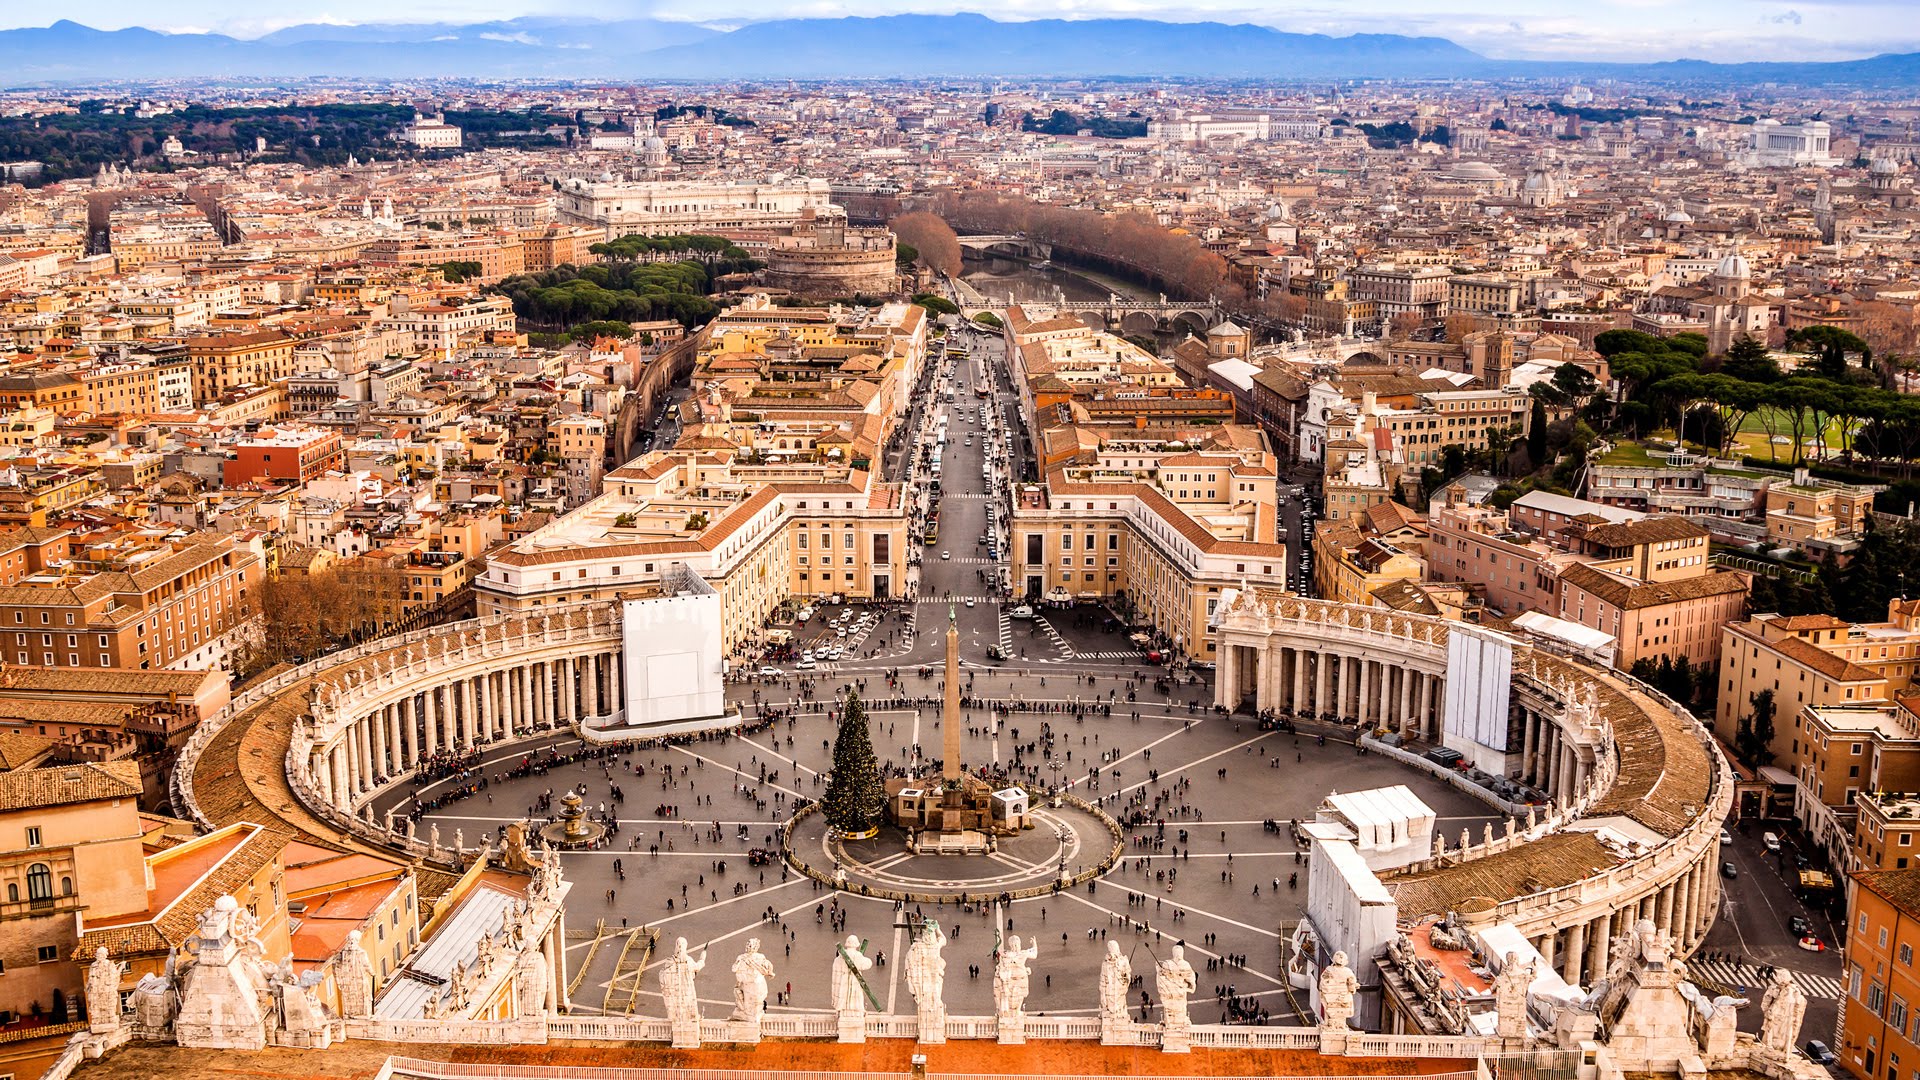 Nice Images Collection: Vatican Desktop Wallpapers